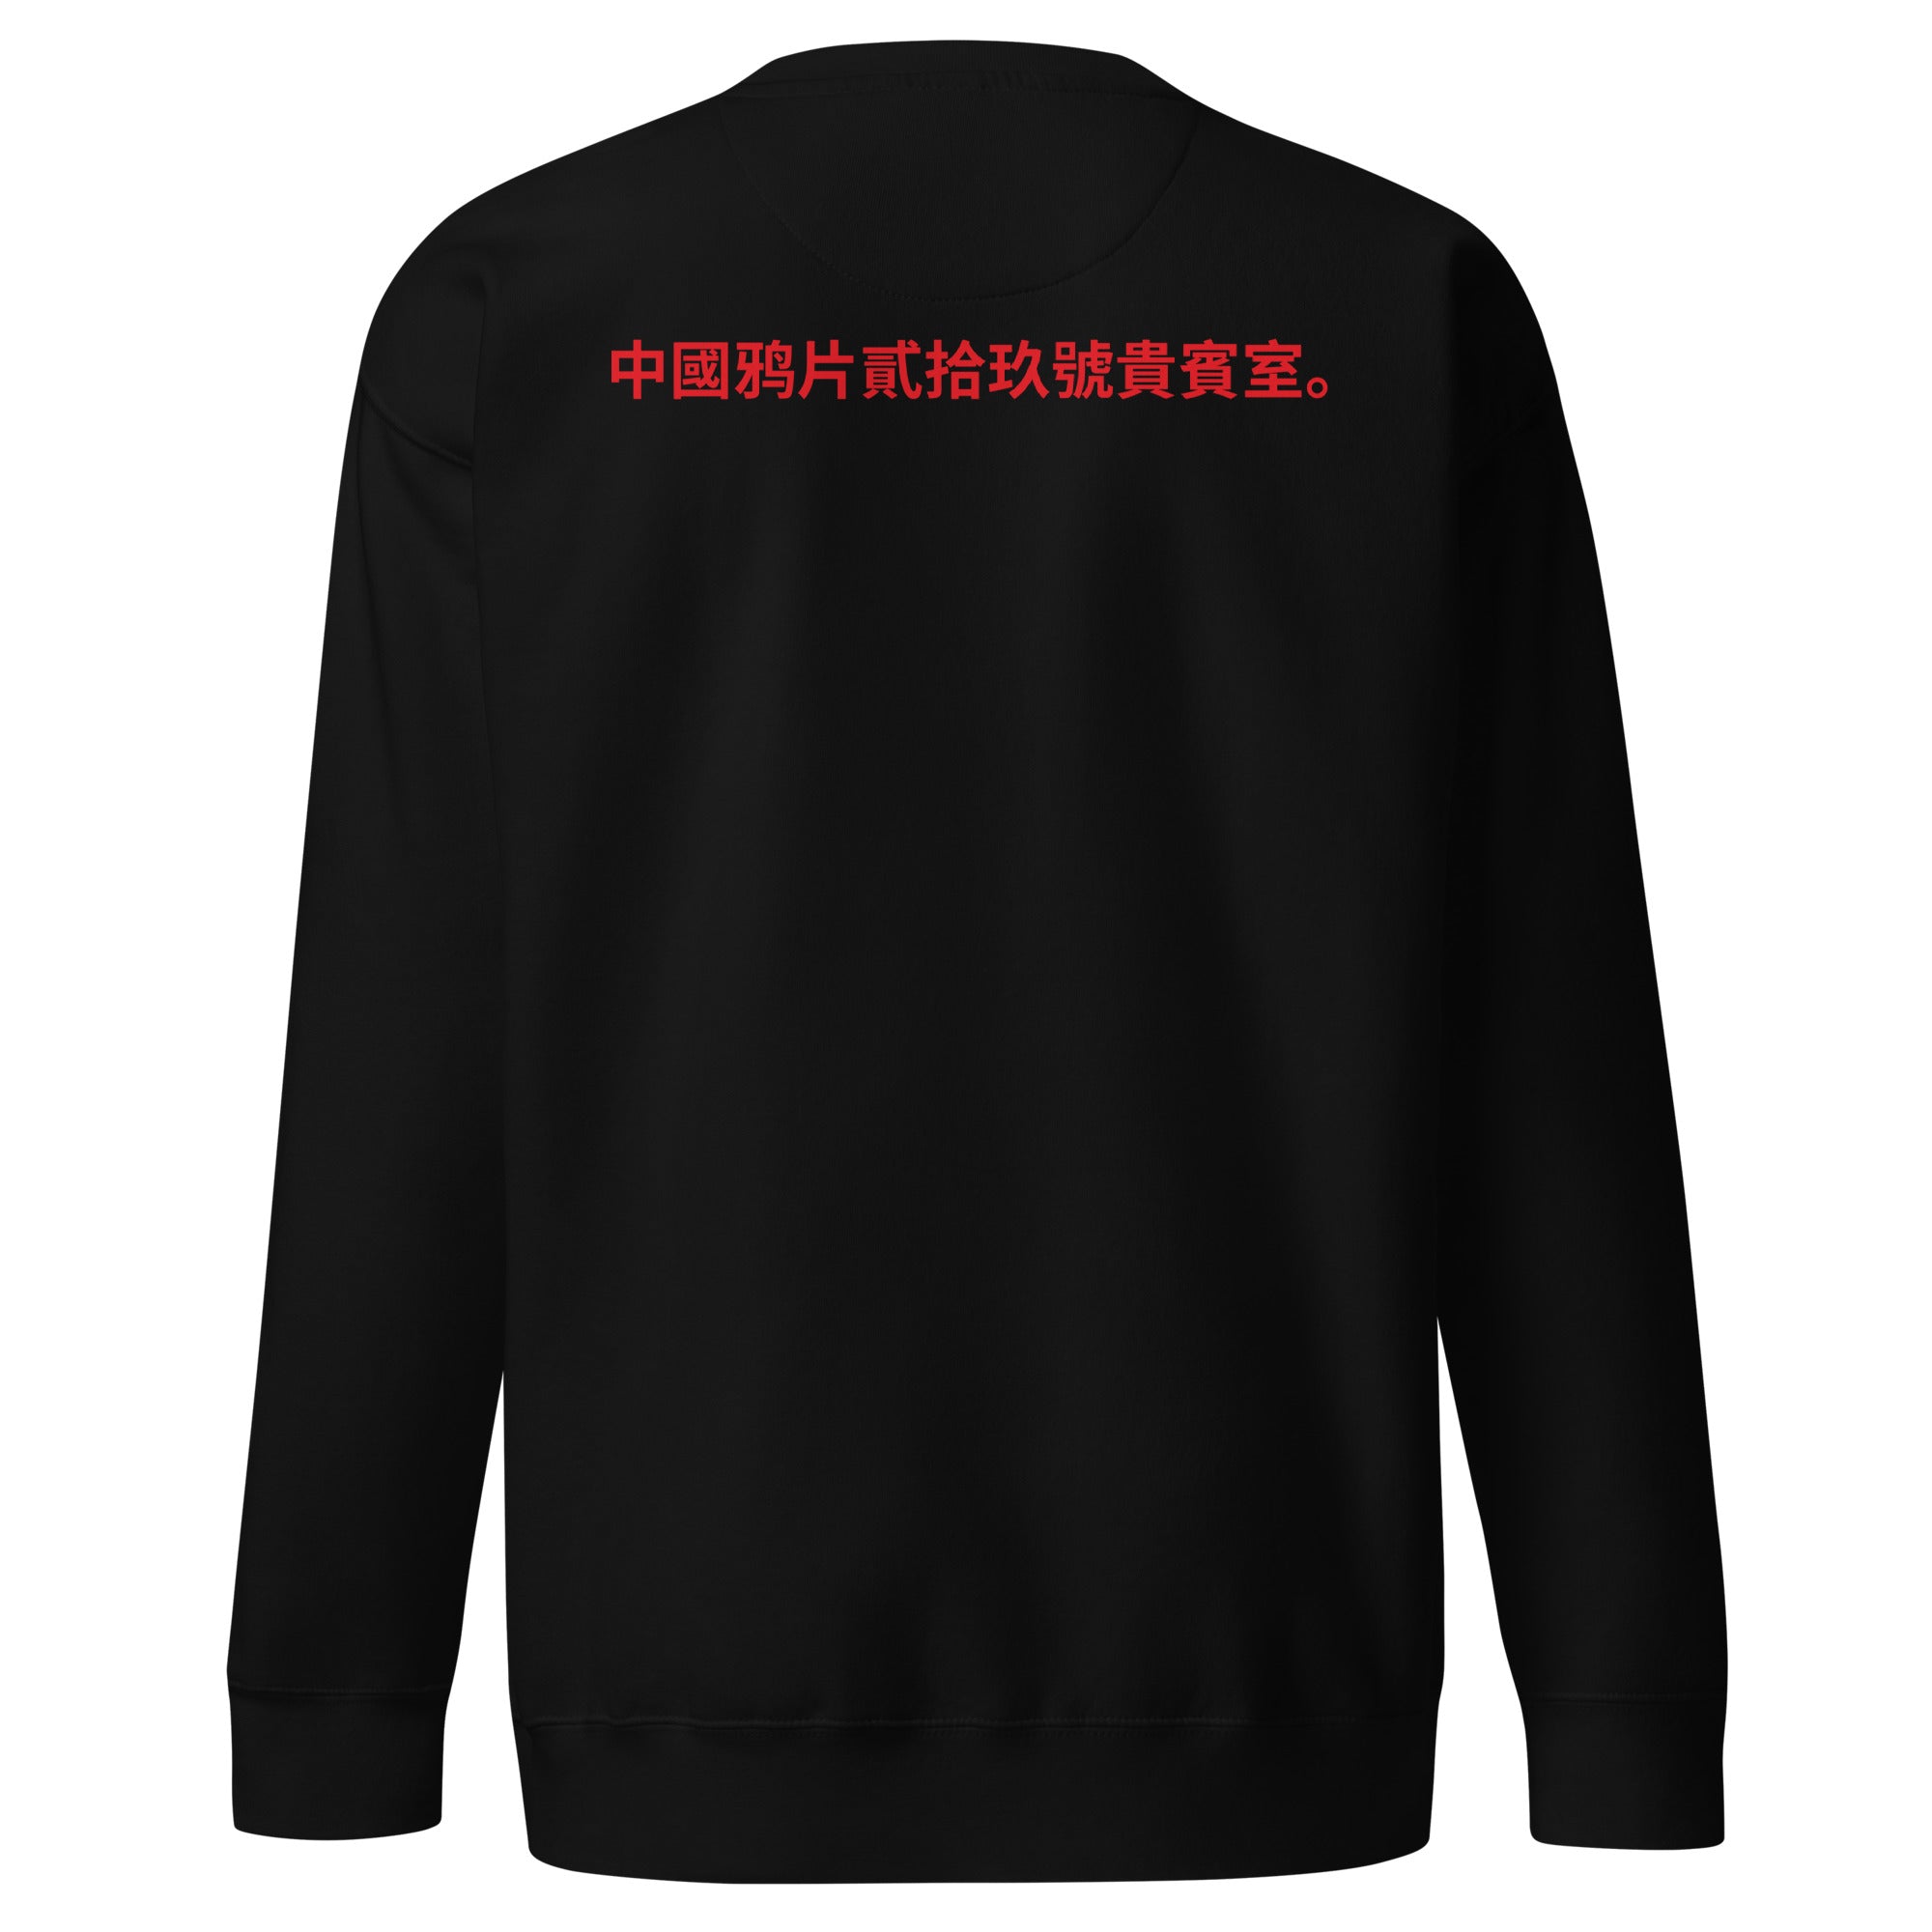 Unisex Premium Sweatshirt - Chinese Opium Lounge 29 v.1 - GRAPHIC T-SHIRTS